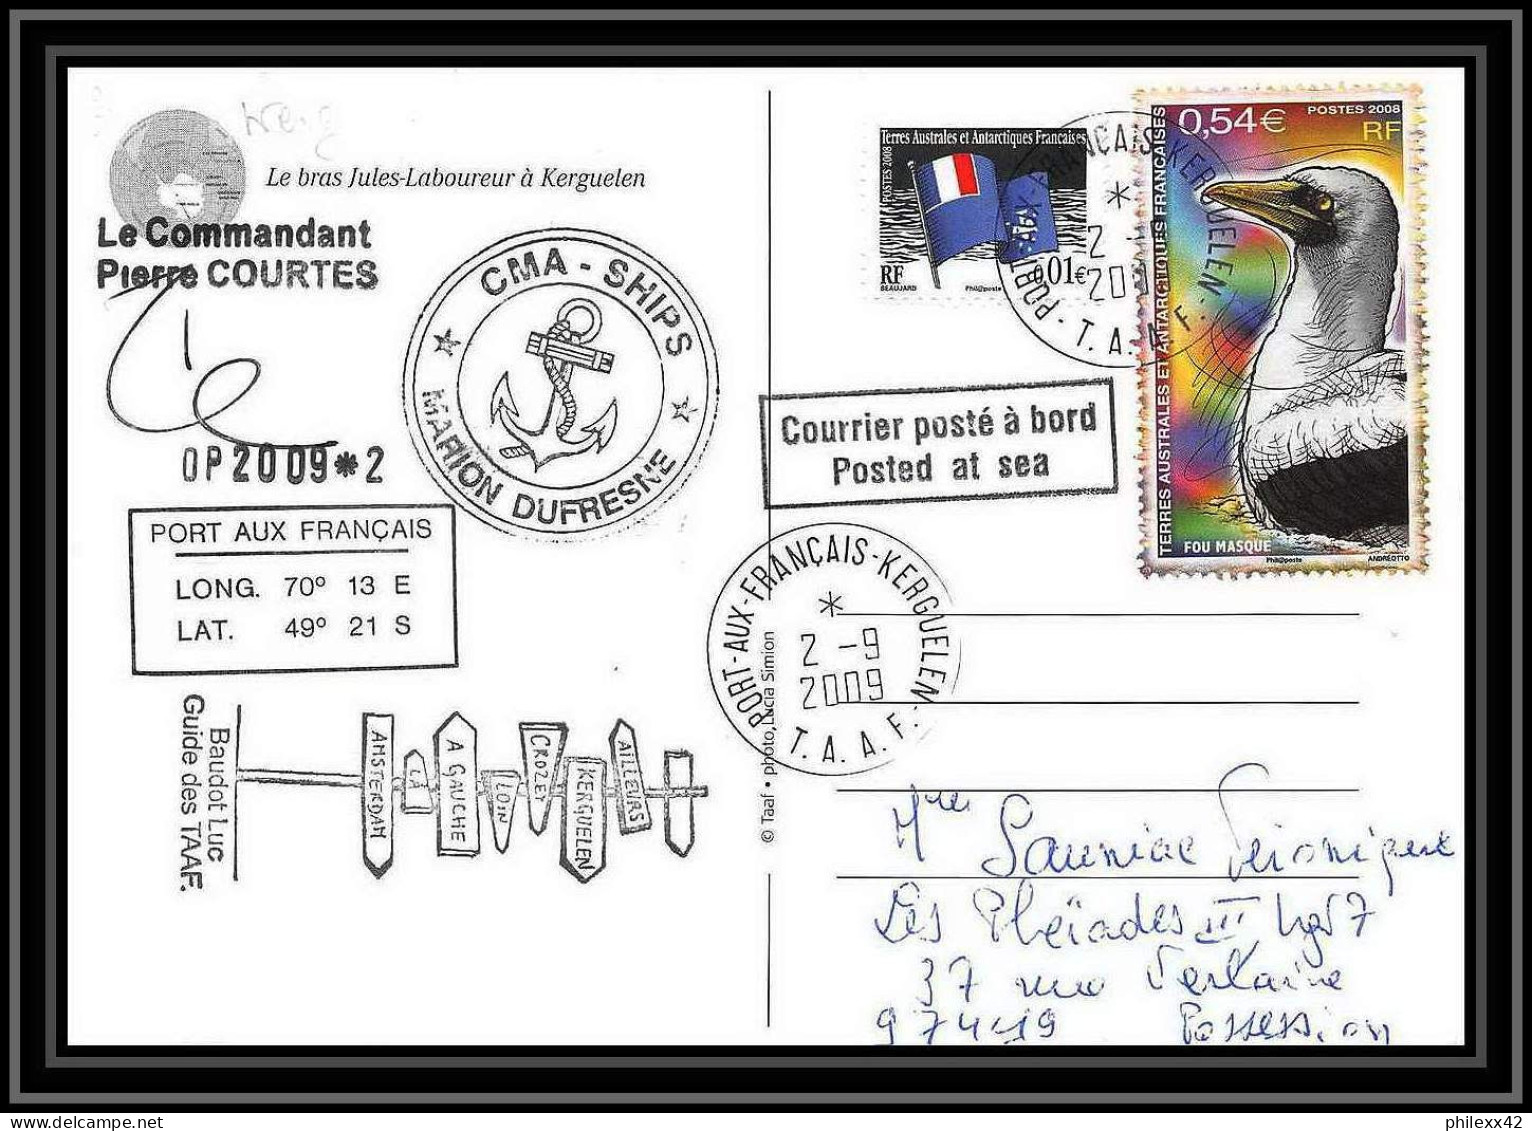 2943 ANTARCTIC Terres Australes (taaf)-carte Postale Dufresne 2 Signé Signed OP 2009/2 Kerguelen 2/9/2009 N°516 - Cartas & Documentos